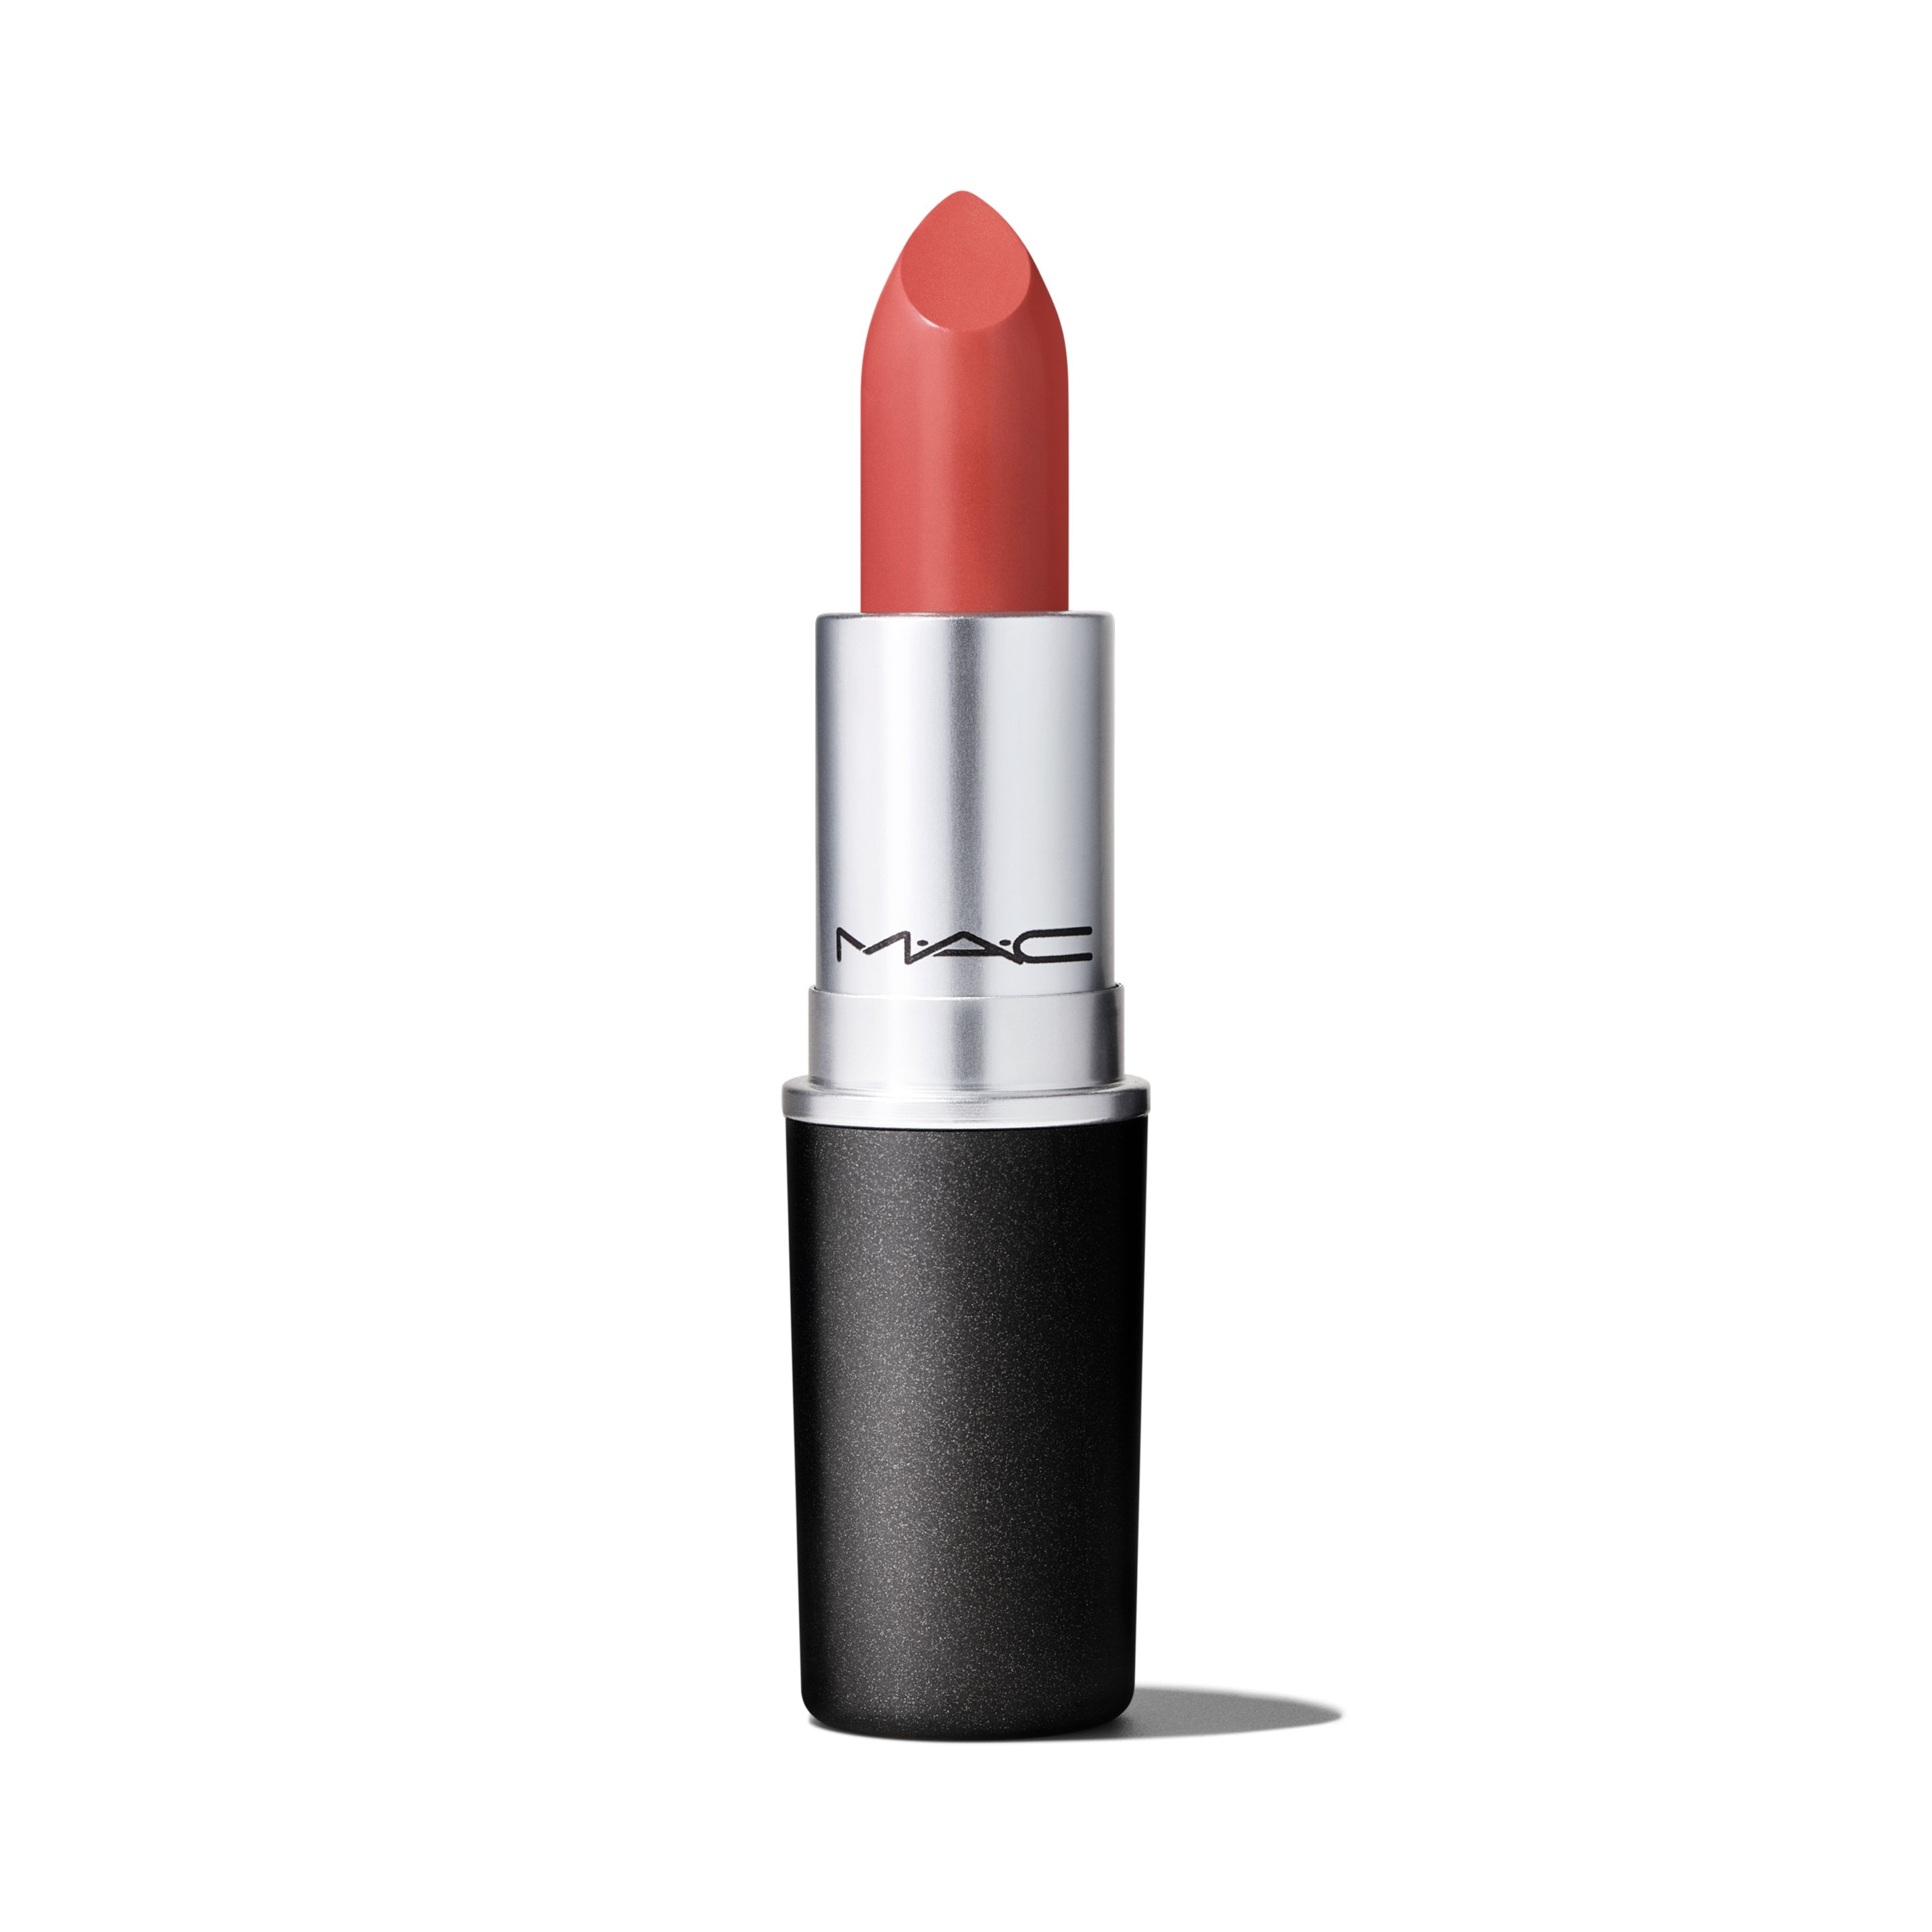 Помада для губ MAC Lipstick Amplified Creme кремовая, тон Smoked Almond, 3 г помада для губ kiko milano smart fusion lipstick 433 светло коричнево розовый 3 г